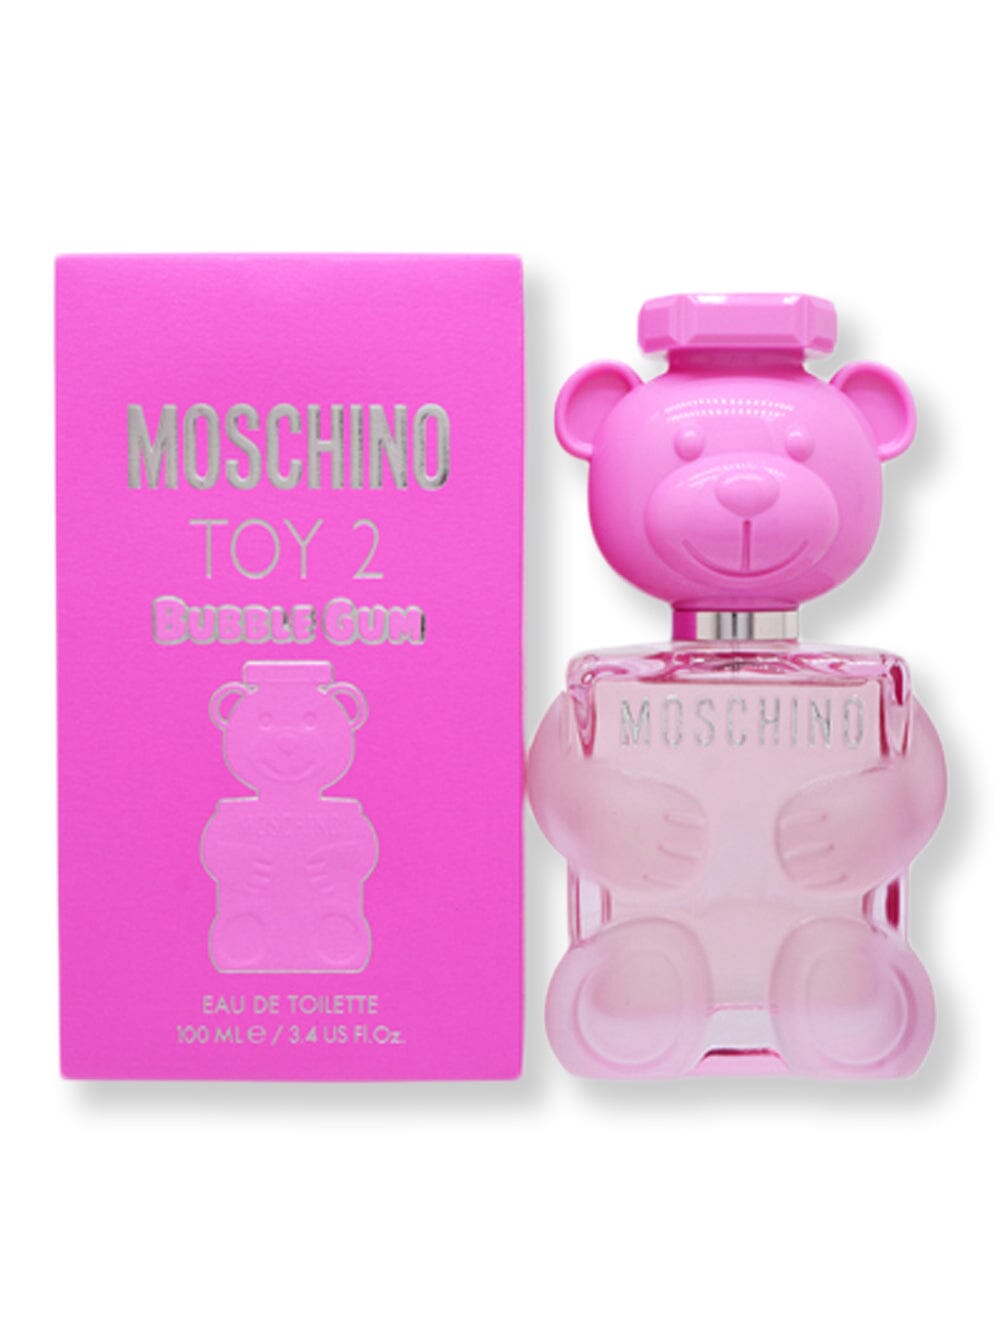 Moschino Moschino Toy 2 Bubble Gum EDT Spray 3.4 oz100 ml Perfume 